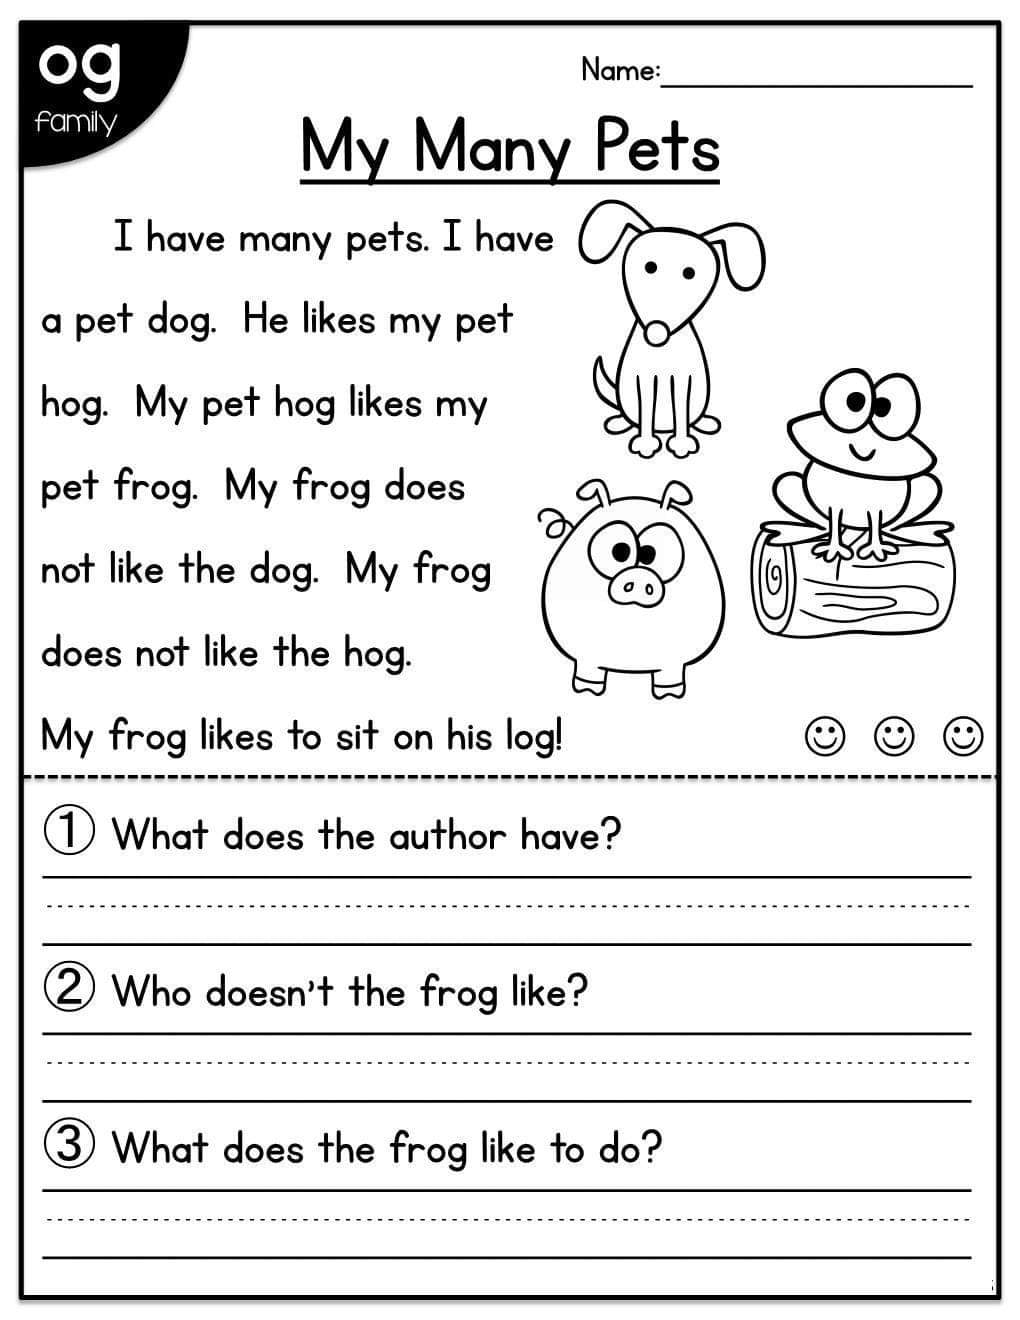 Reading Comprehension Worksheets For Kindergarten Pdf